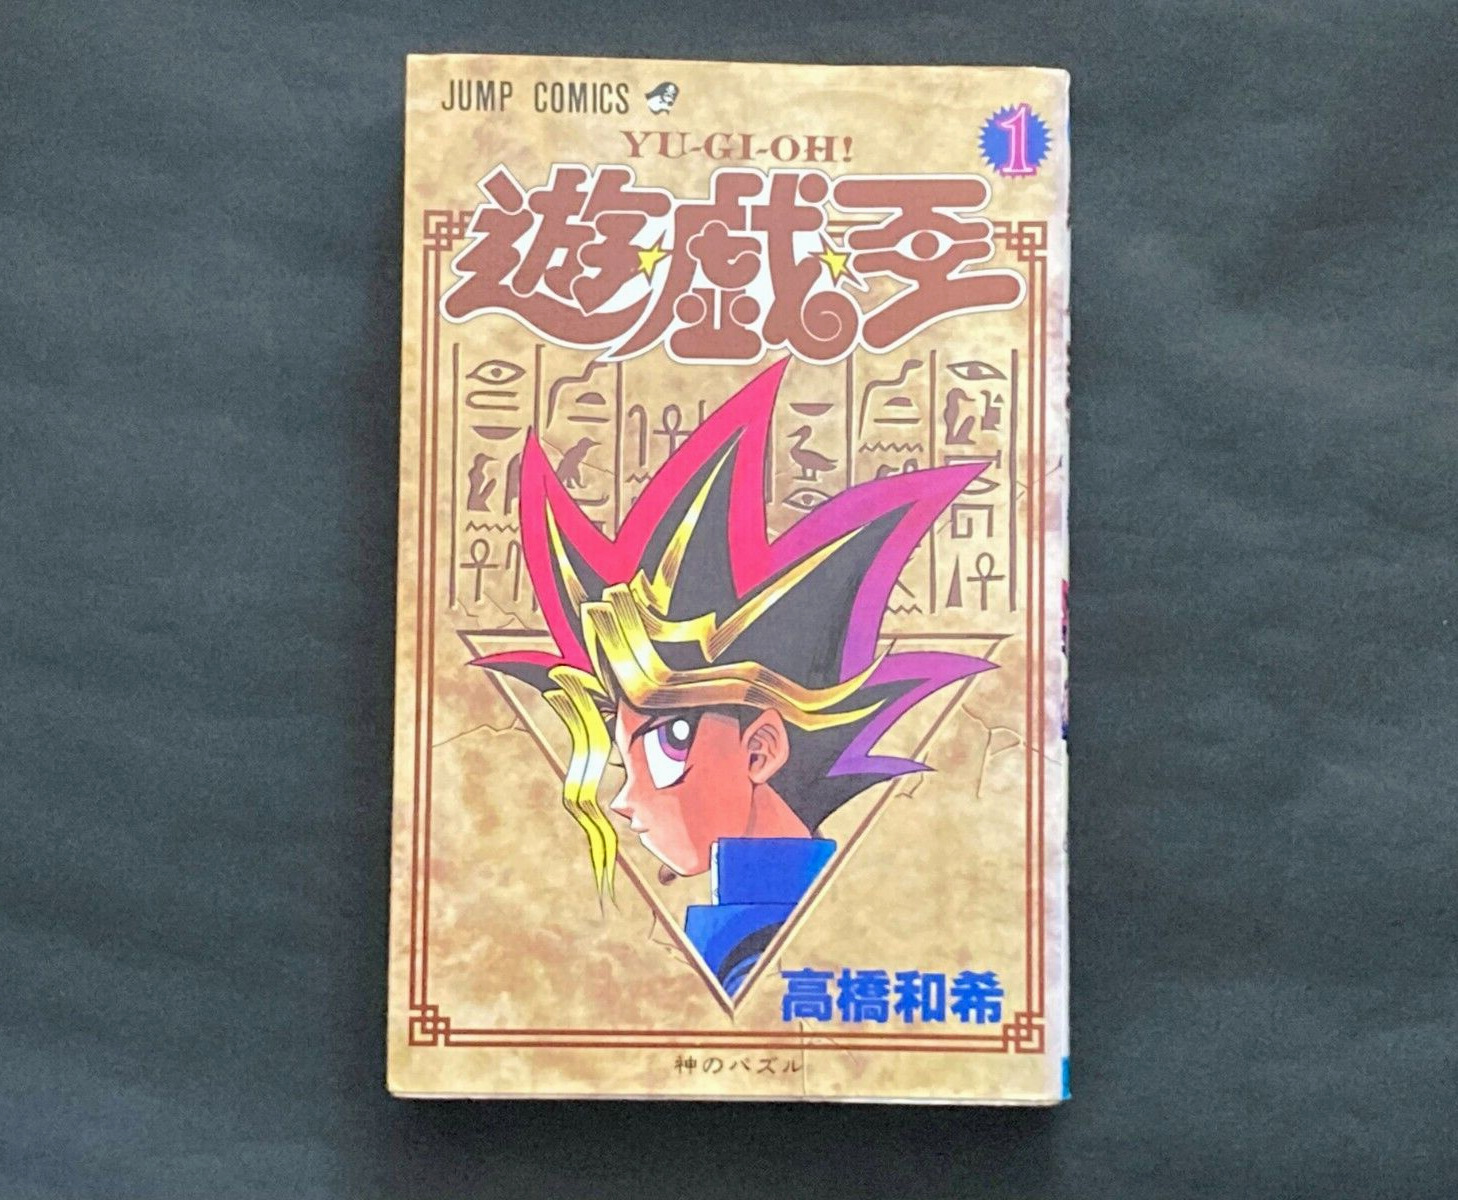 1st Print Edition Yu-Gi-Oh Vol.01 1997 By Kazuki Takahashi Comic Manga Japanese